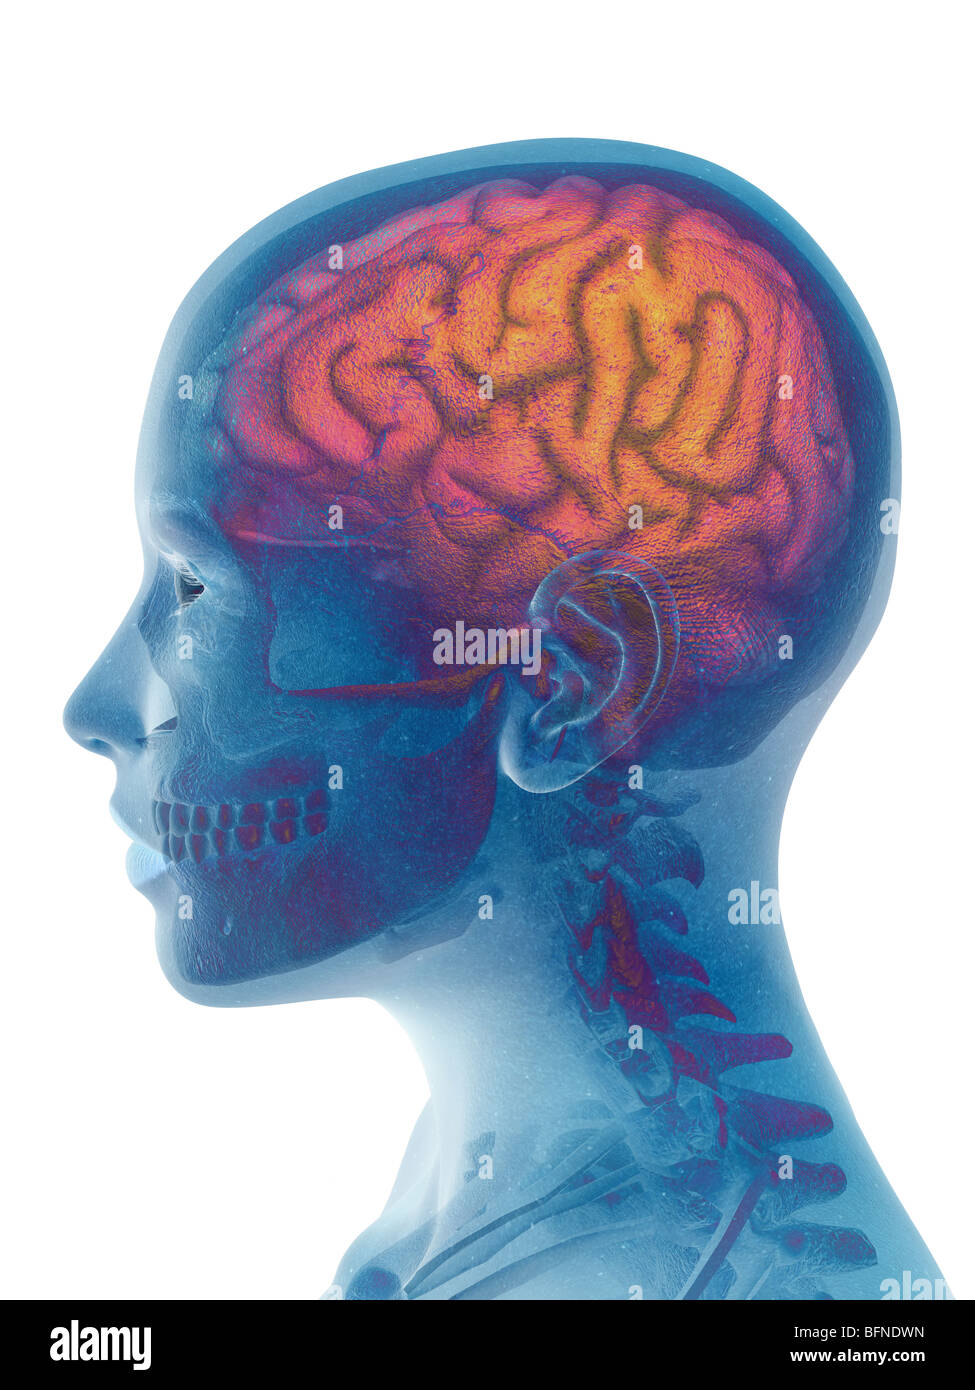 Ilustración del cerebro humano superpuesta a una cabeza femenina Foto de stock